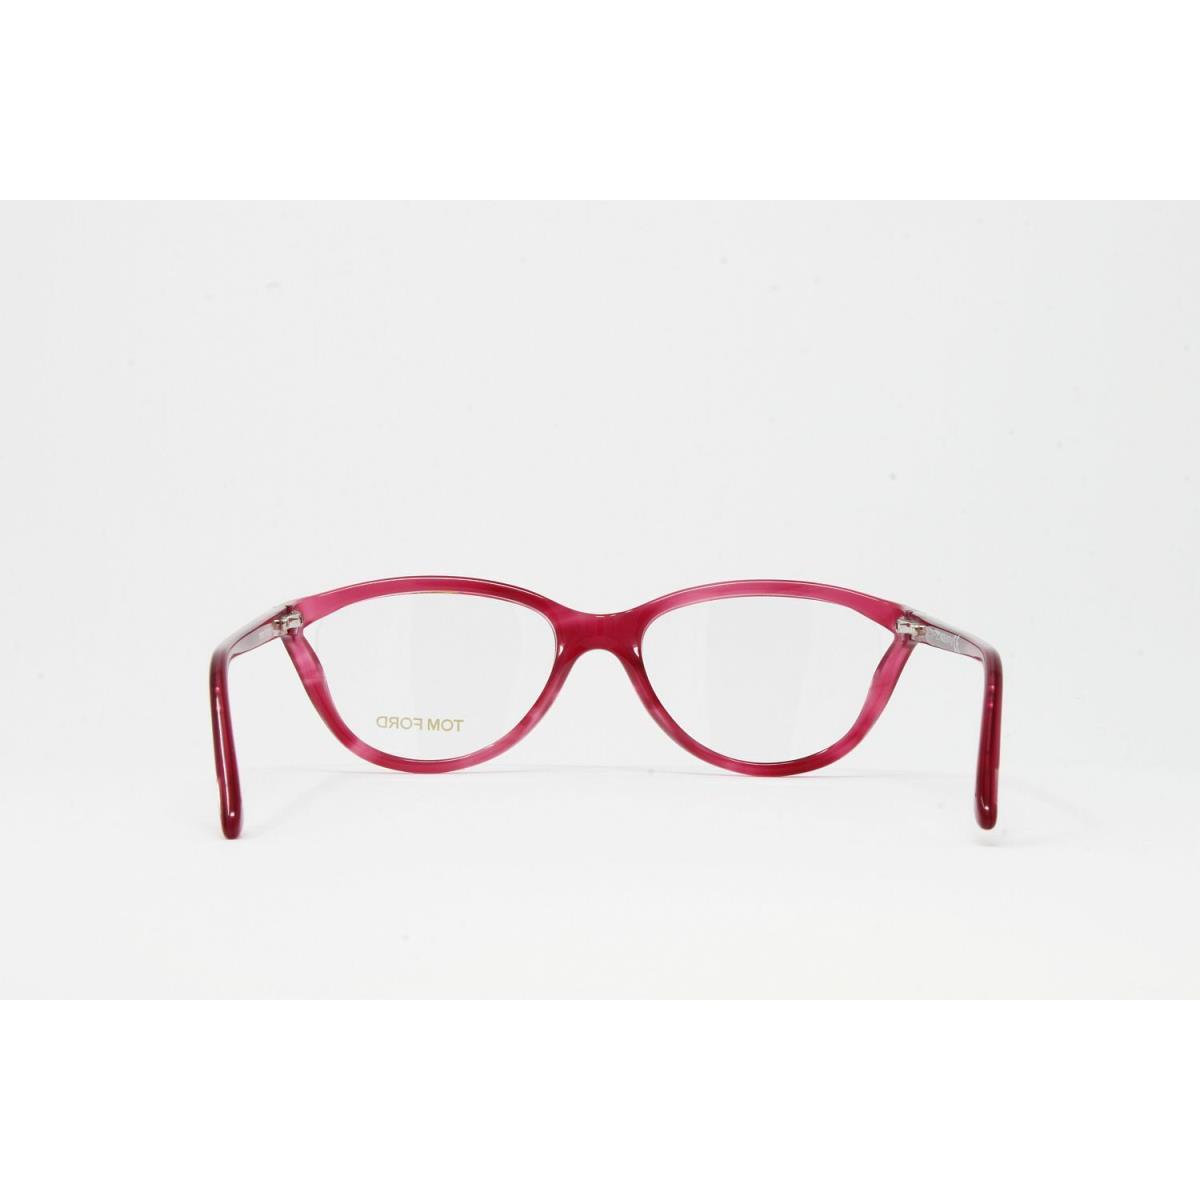 Tom Ford eyeglasses Color - Red Frame 2